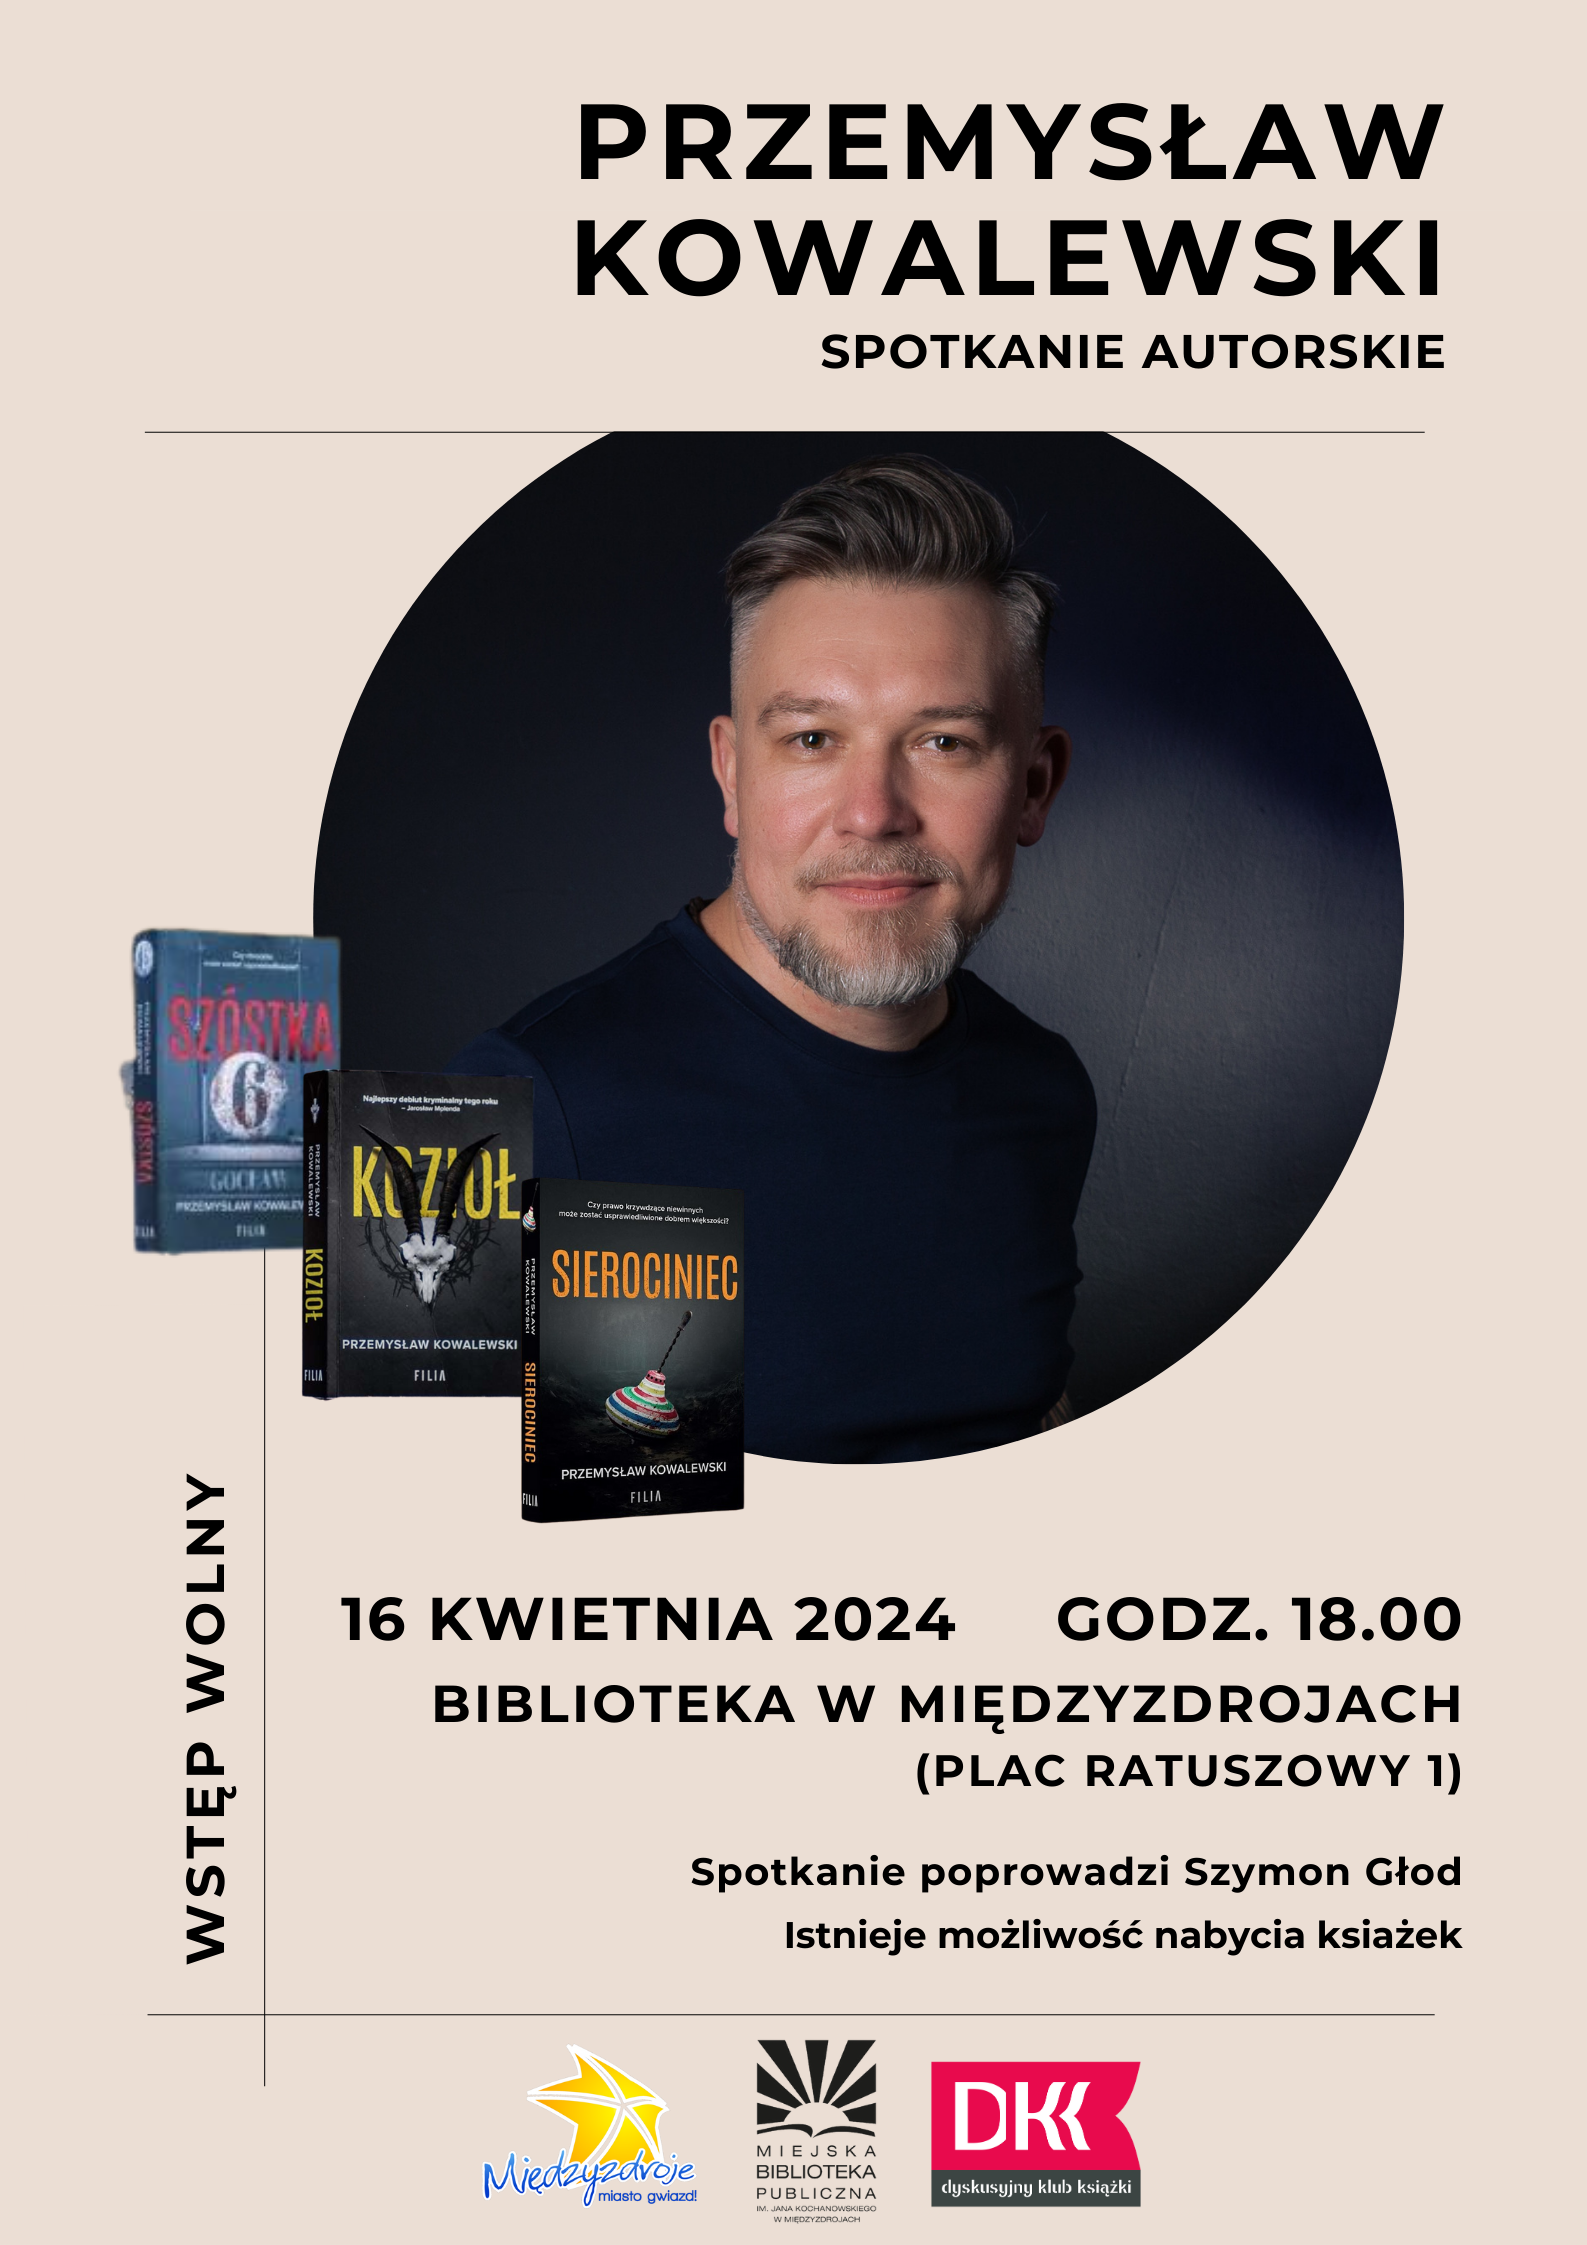 Spotkanie autorskie z Przemysławem Kowalewskim w międzyzdrojskiej bibliotece 16 kwietnia 2024 r. - zapowiedź